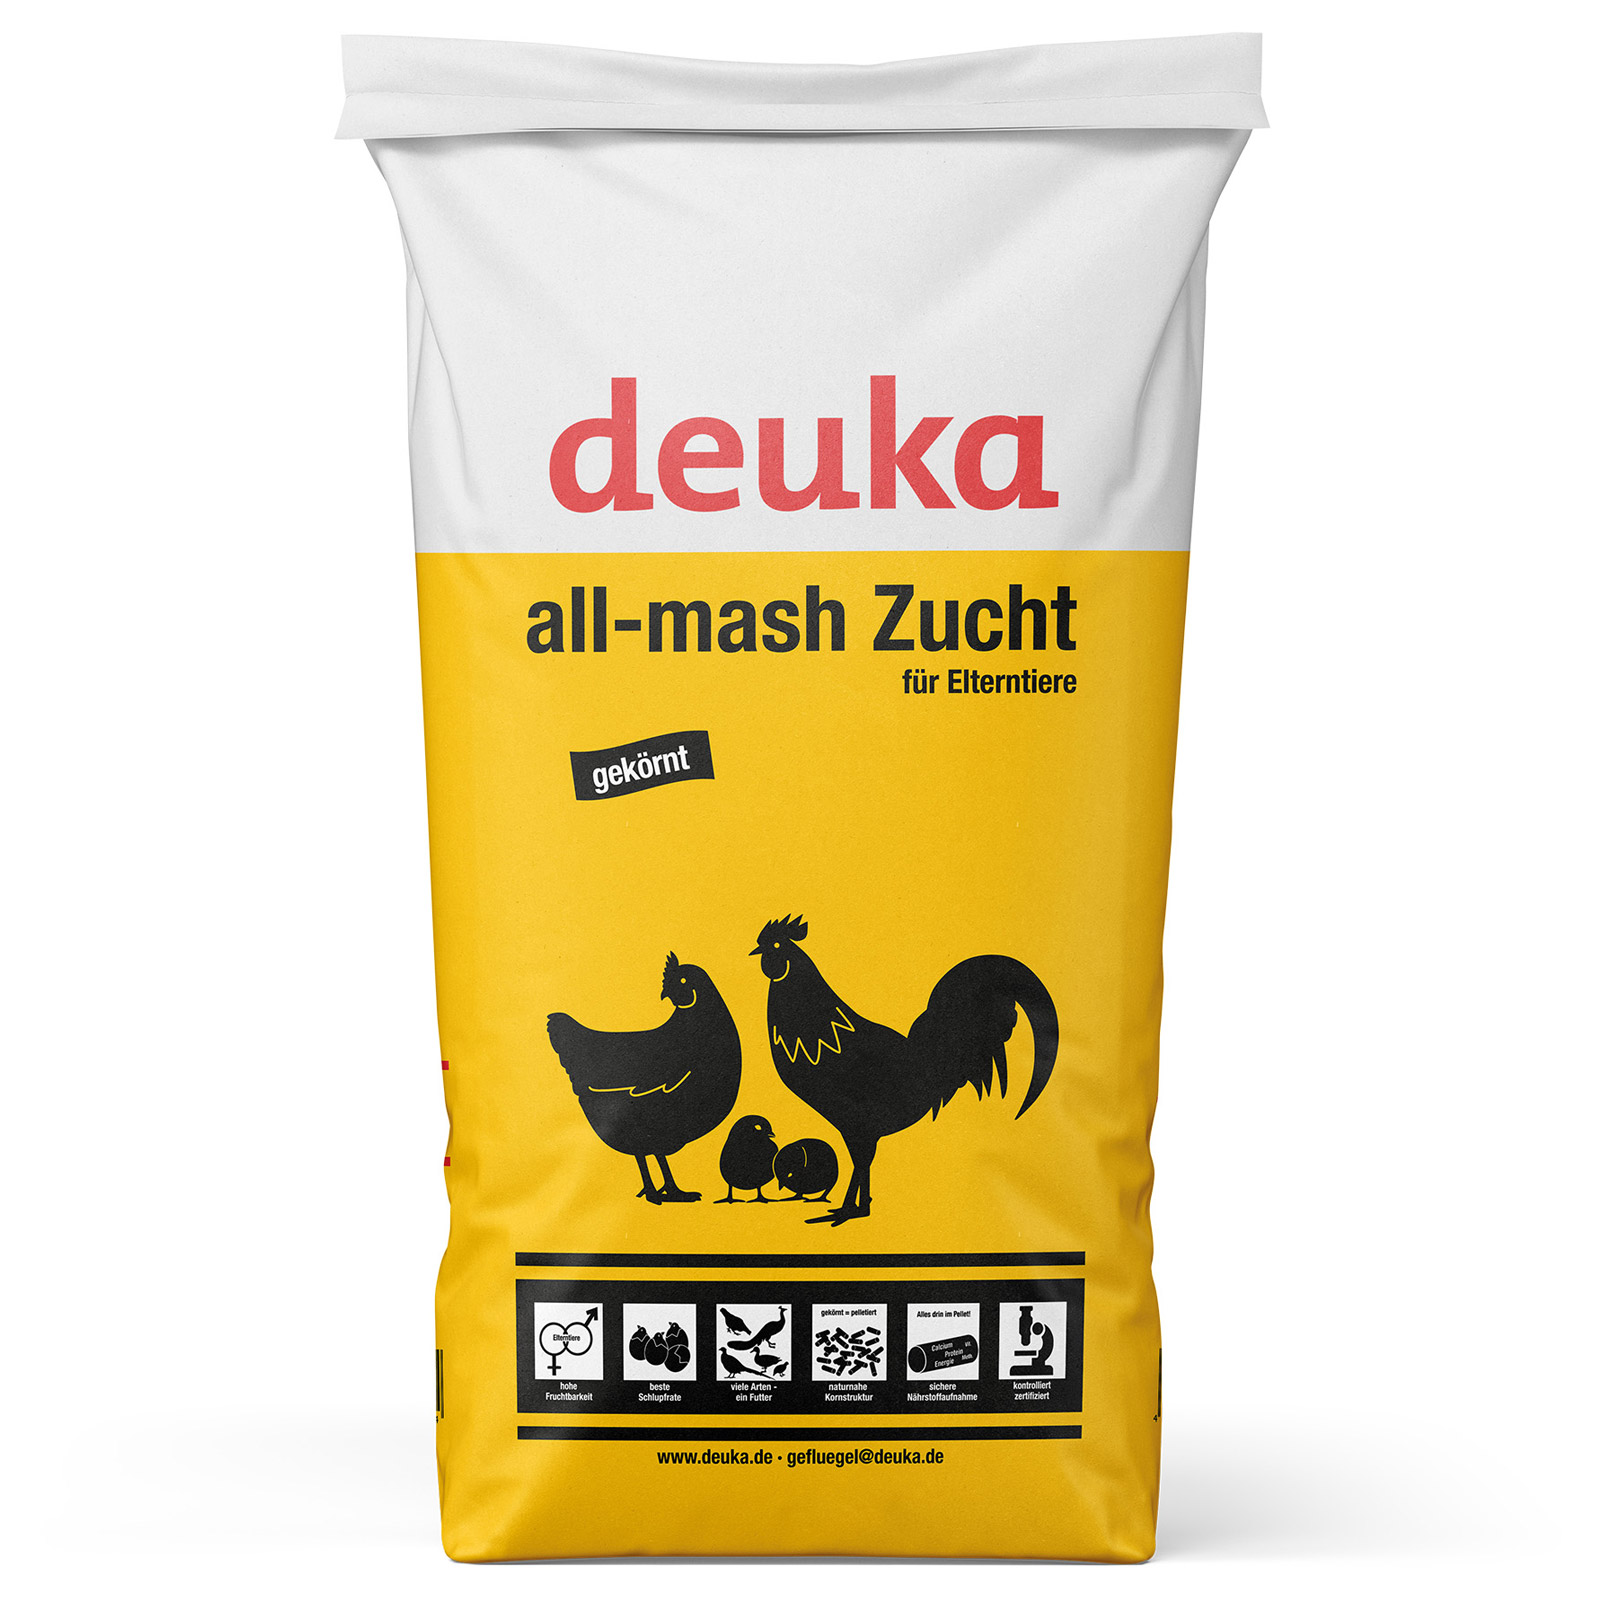 Deuka All-Mash Breeding Poultry Feed 25 kg